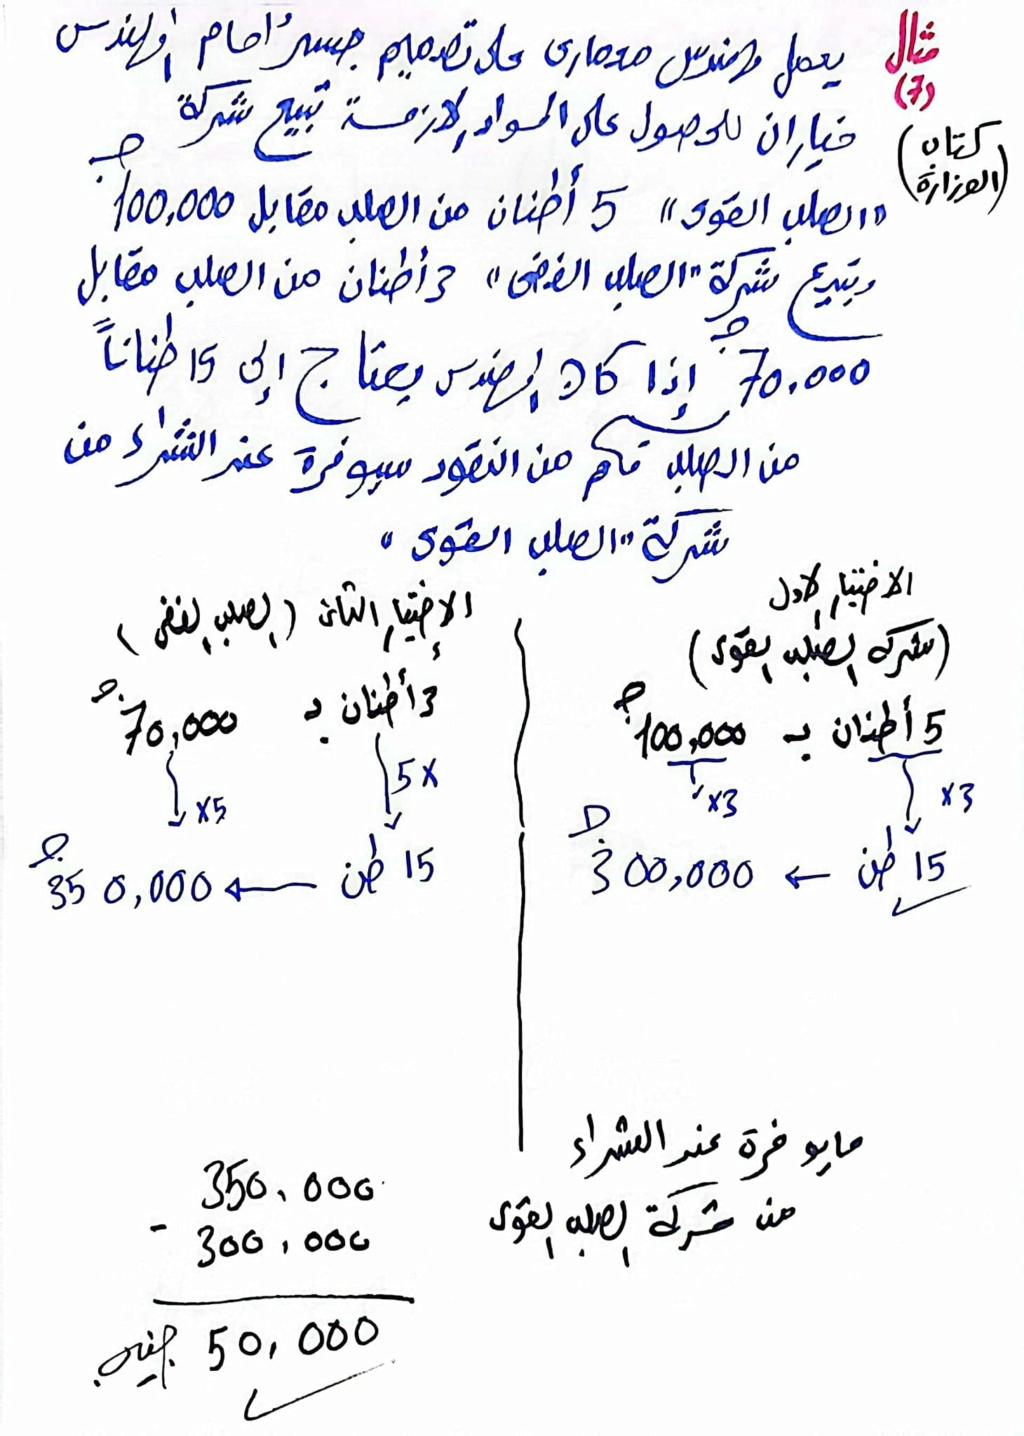  مسائل كلاميه متعدده الخطوات رياضيات خامسة ابتدائي مستر محمد ابراهيم 563